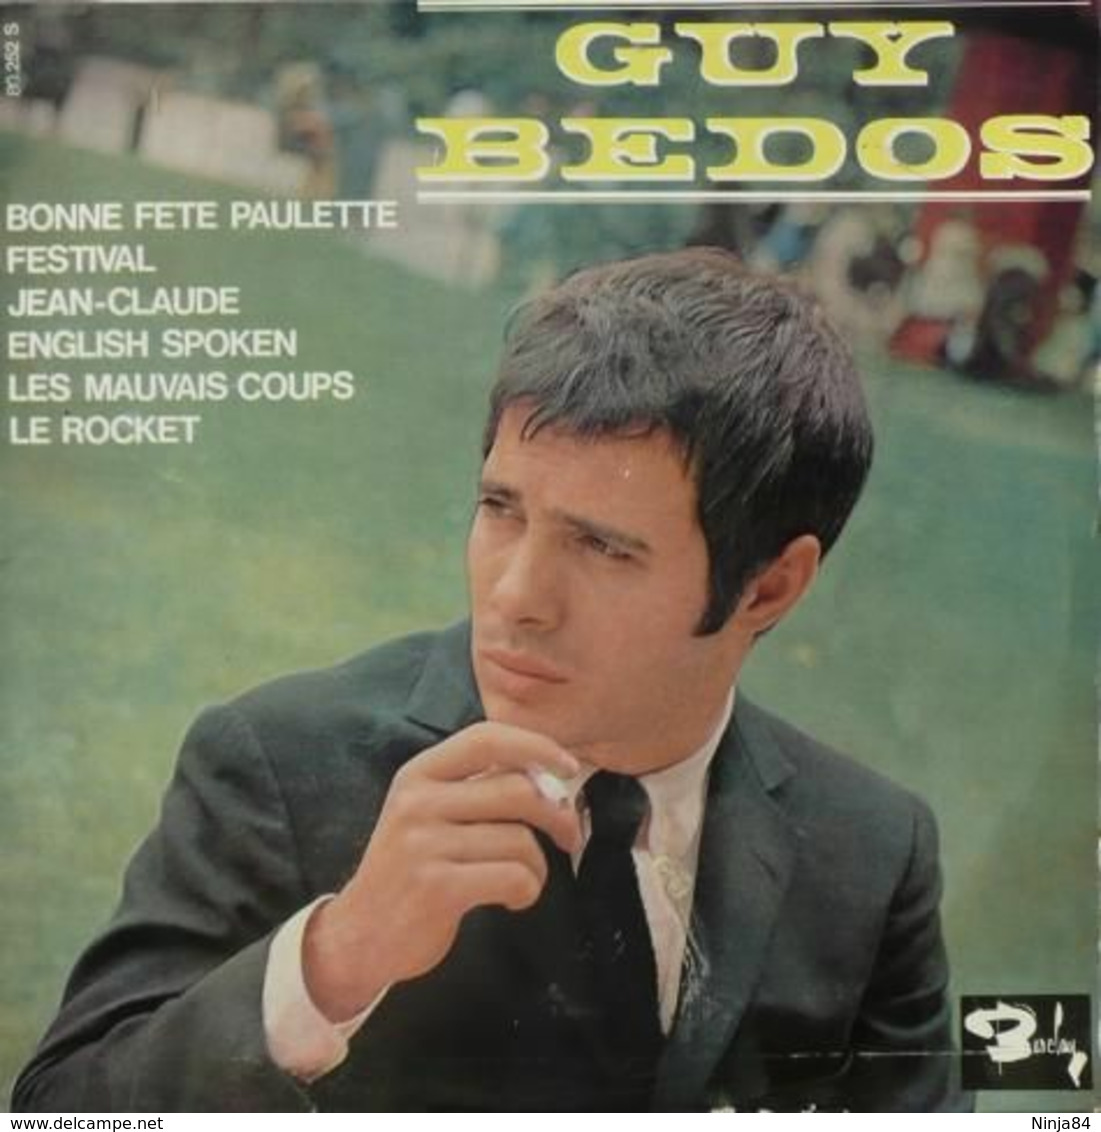 LP 25 CM (10")  Guy Bedos  "  Bonne Fête Paulette  " - Special Formats